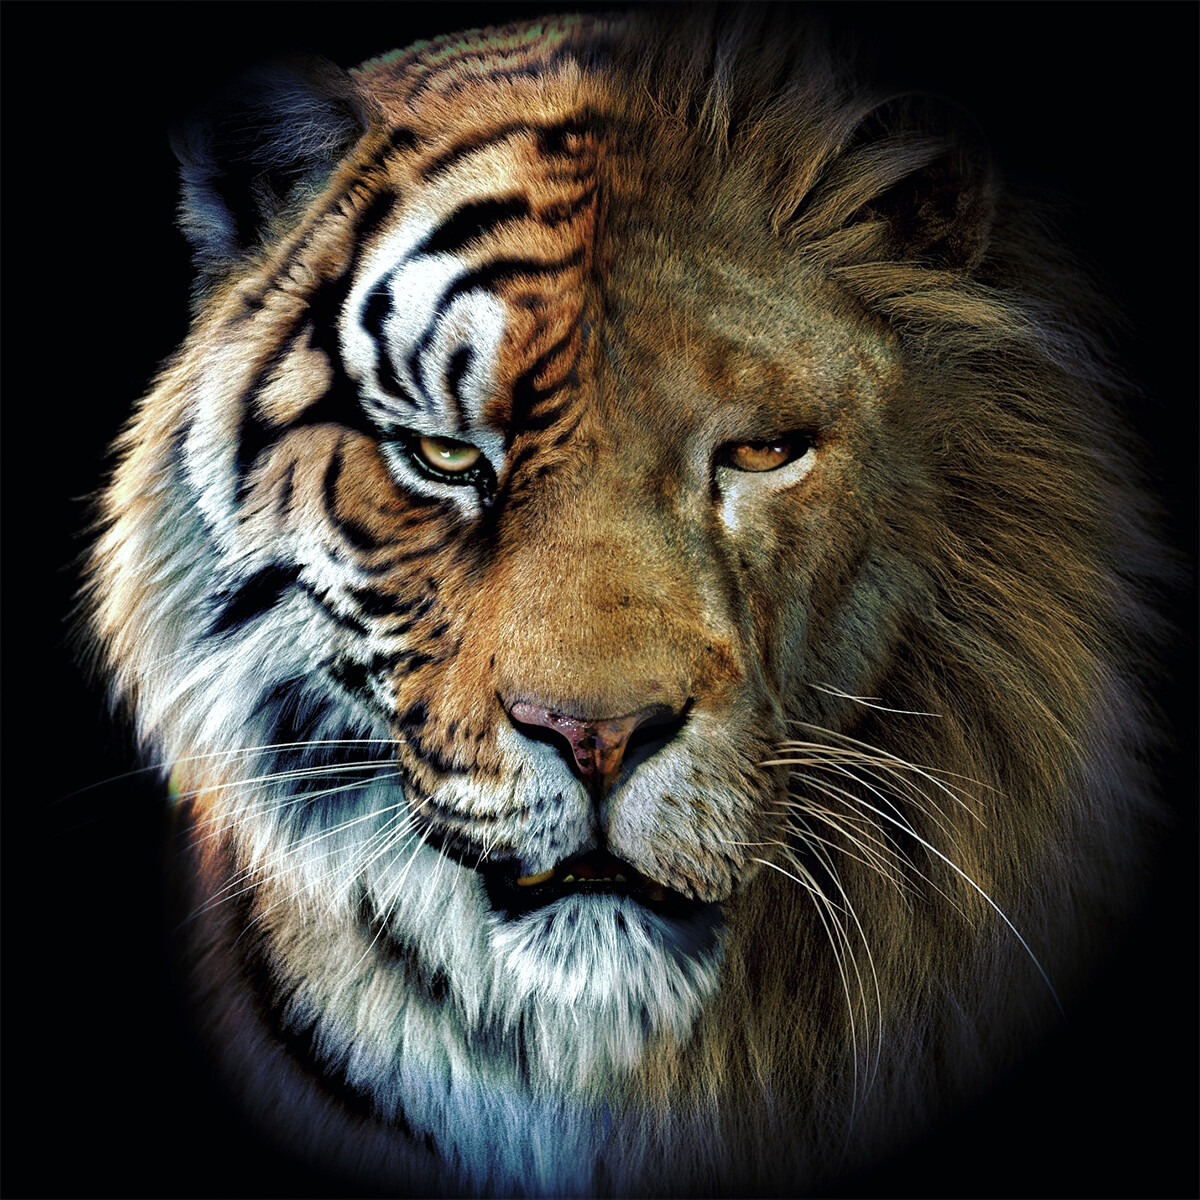 ArtStation - Tiger & Lion mash-up